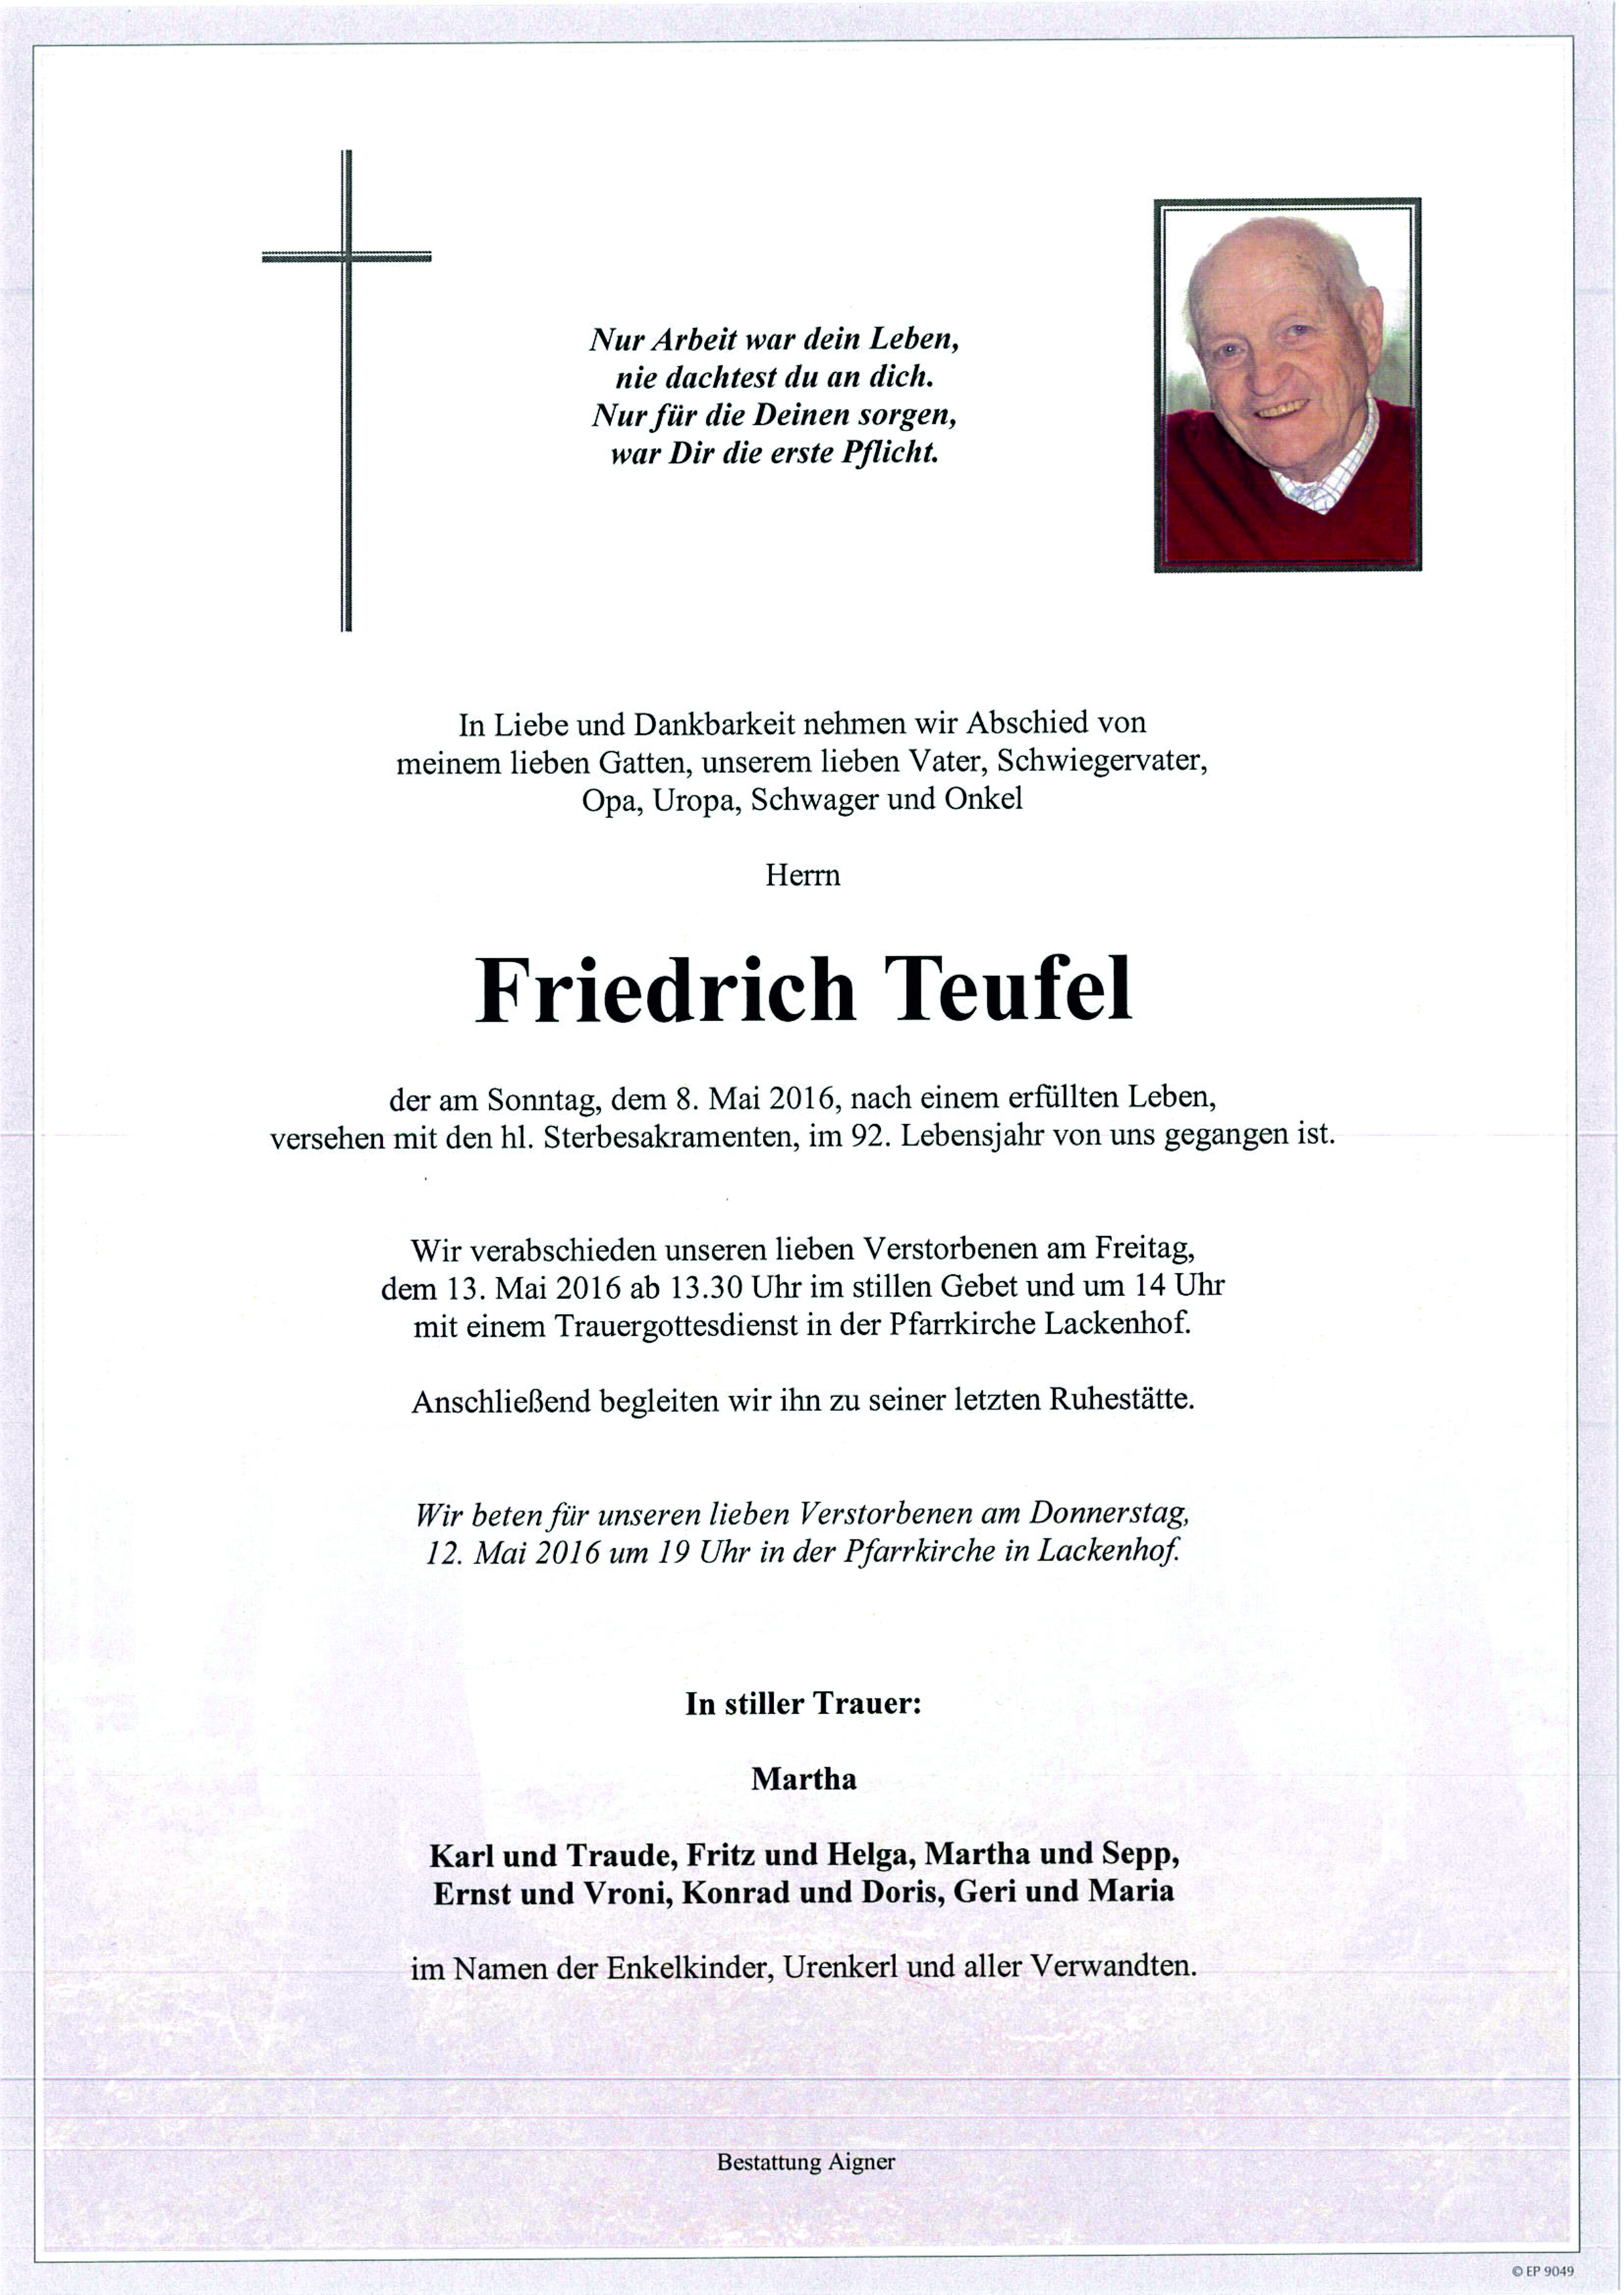 Friedrich Teufel